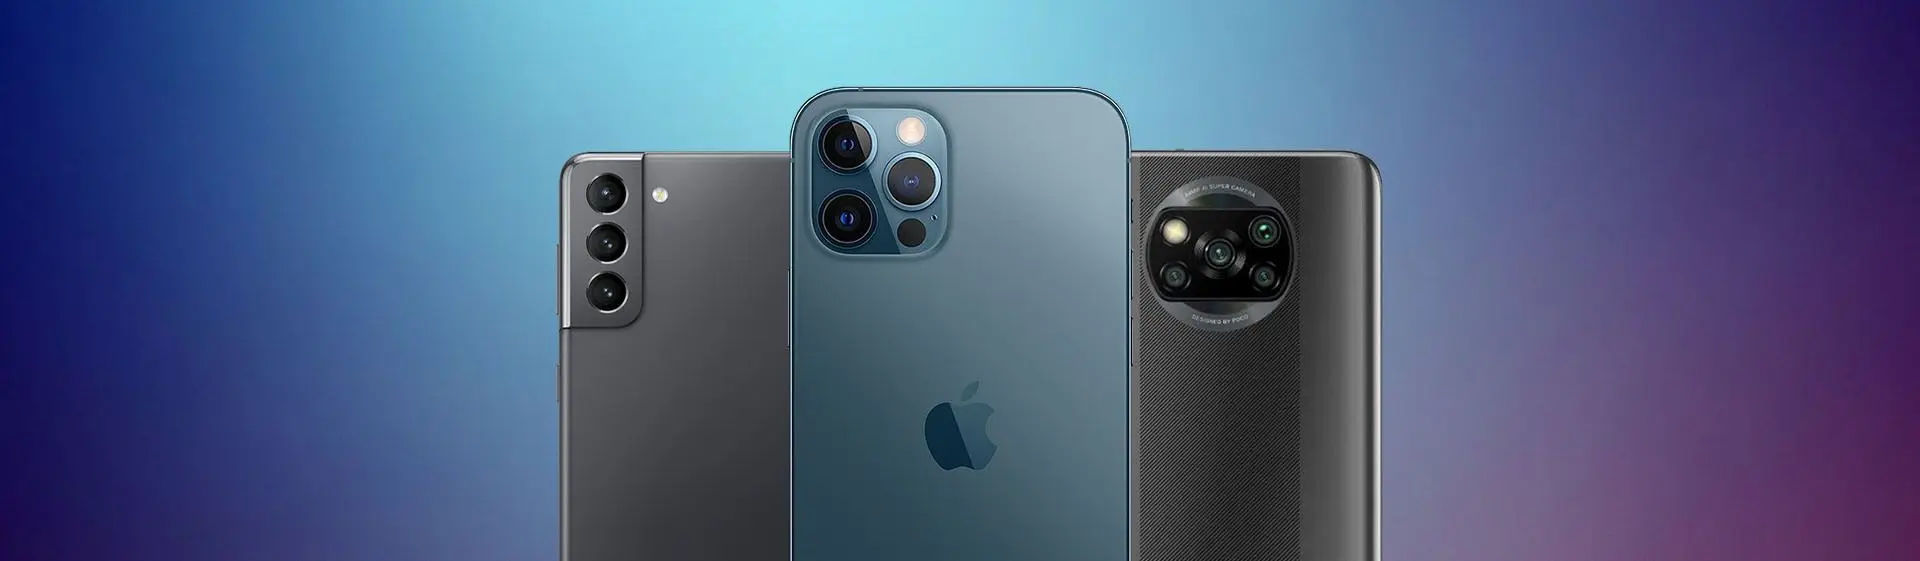 Três modelos de smartphones de diferentes marcas de celulares em um fundo azulado